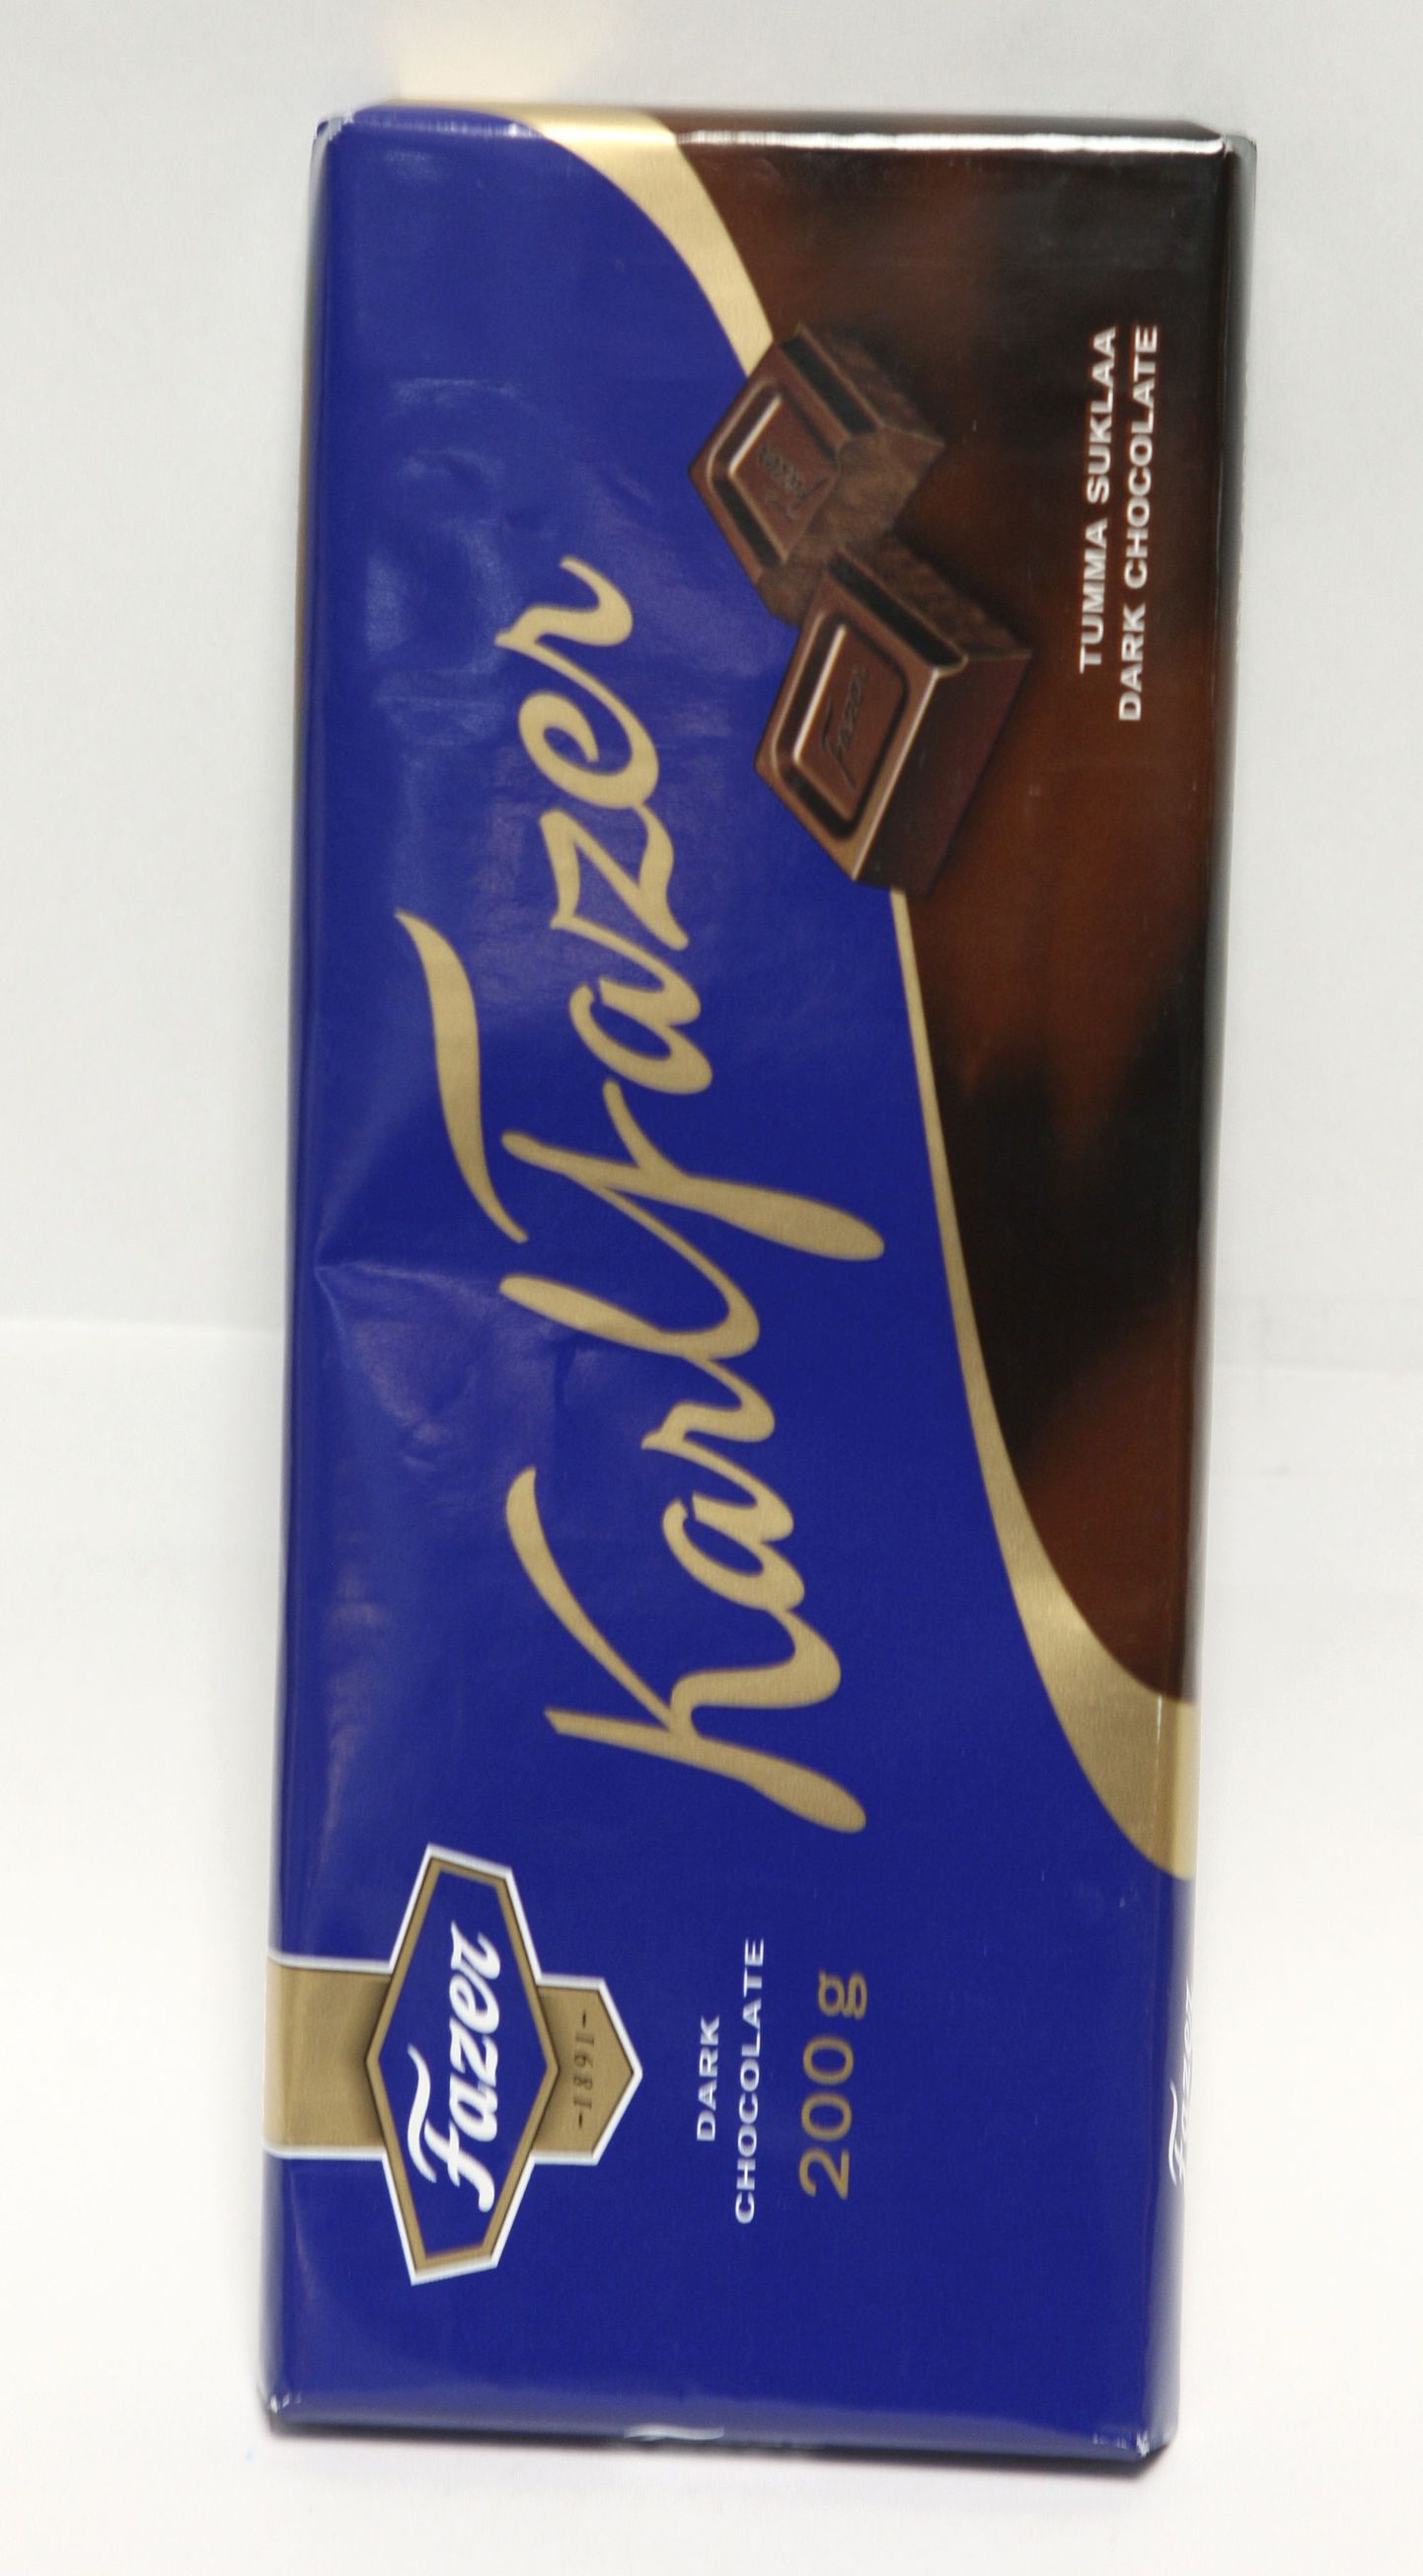 Fazeri šokolaad on ka Eestis väga tuntud.